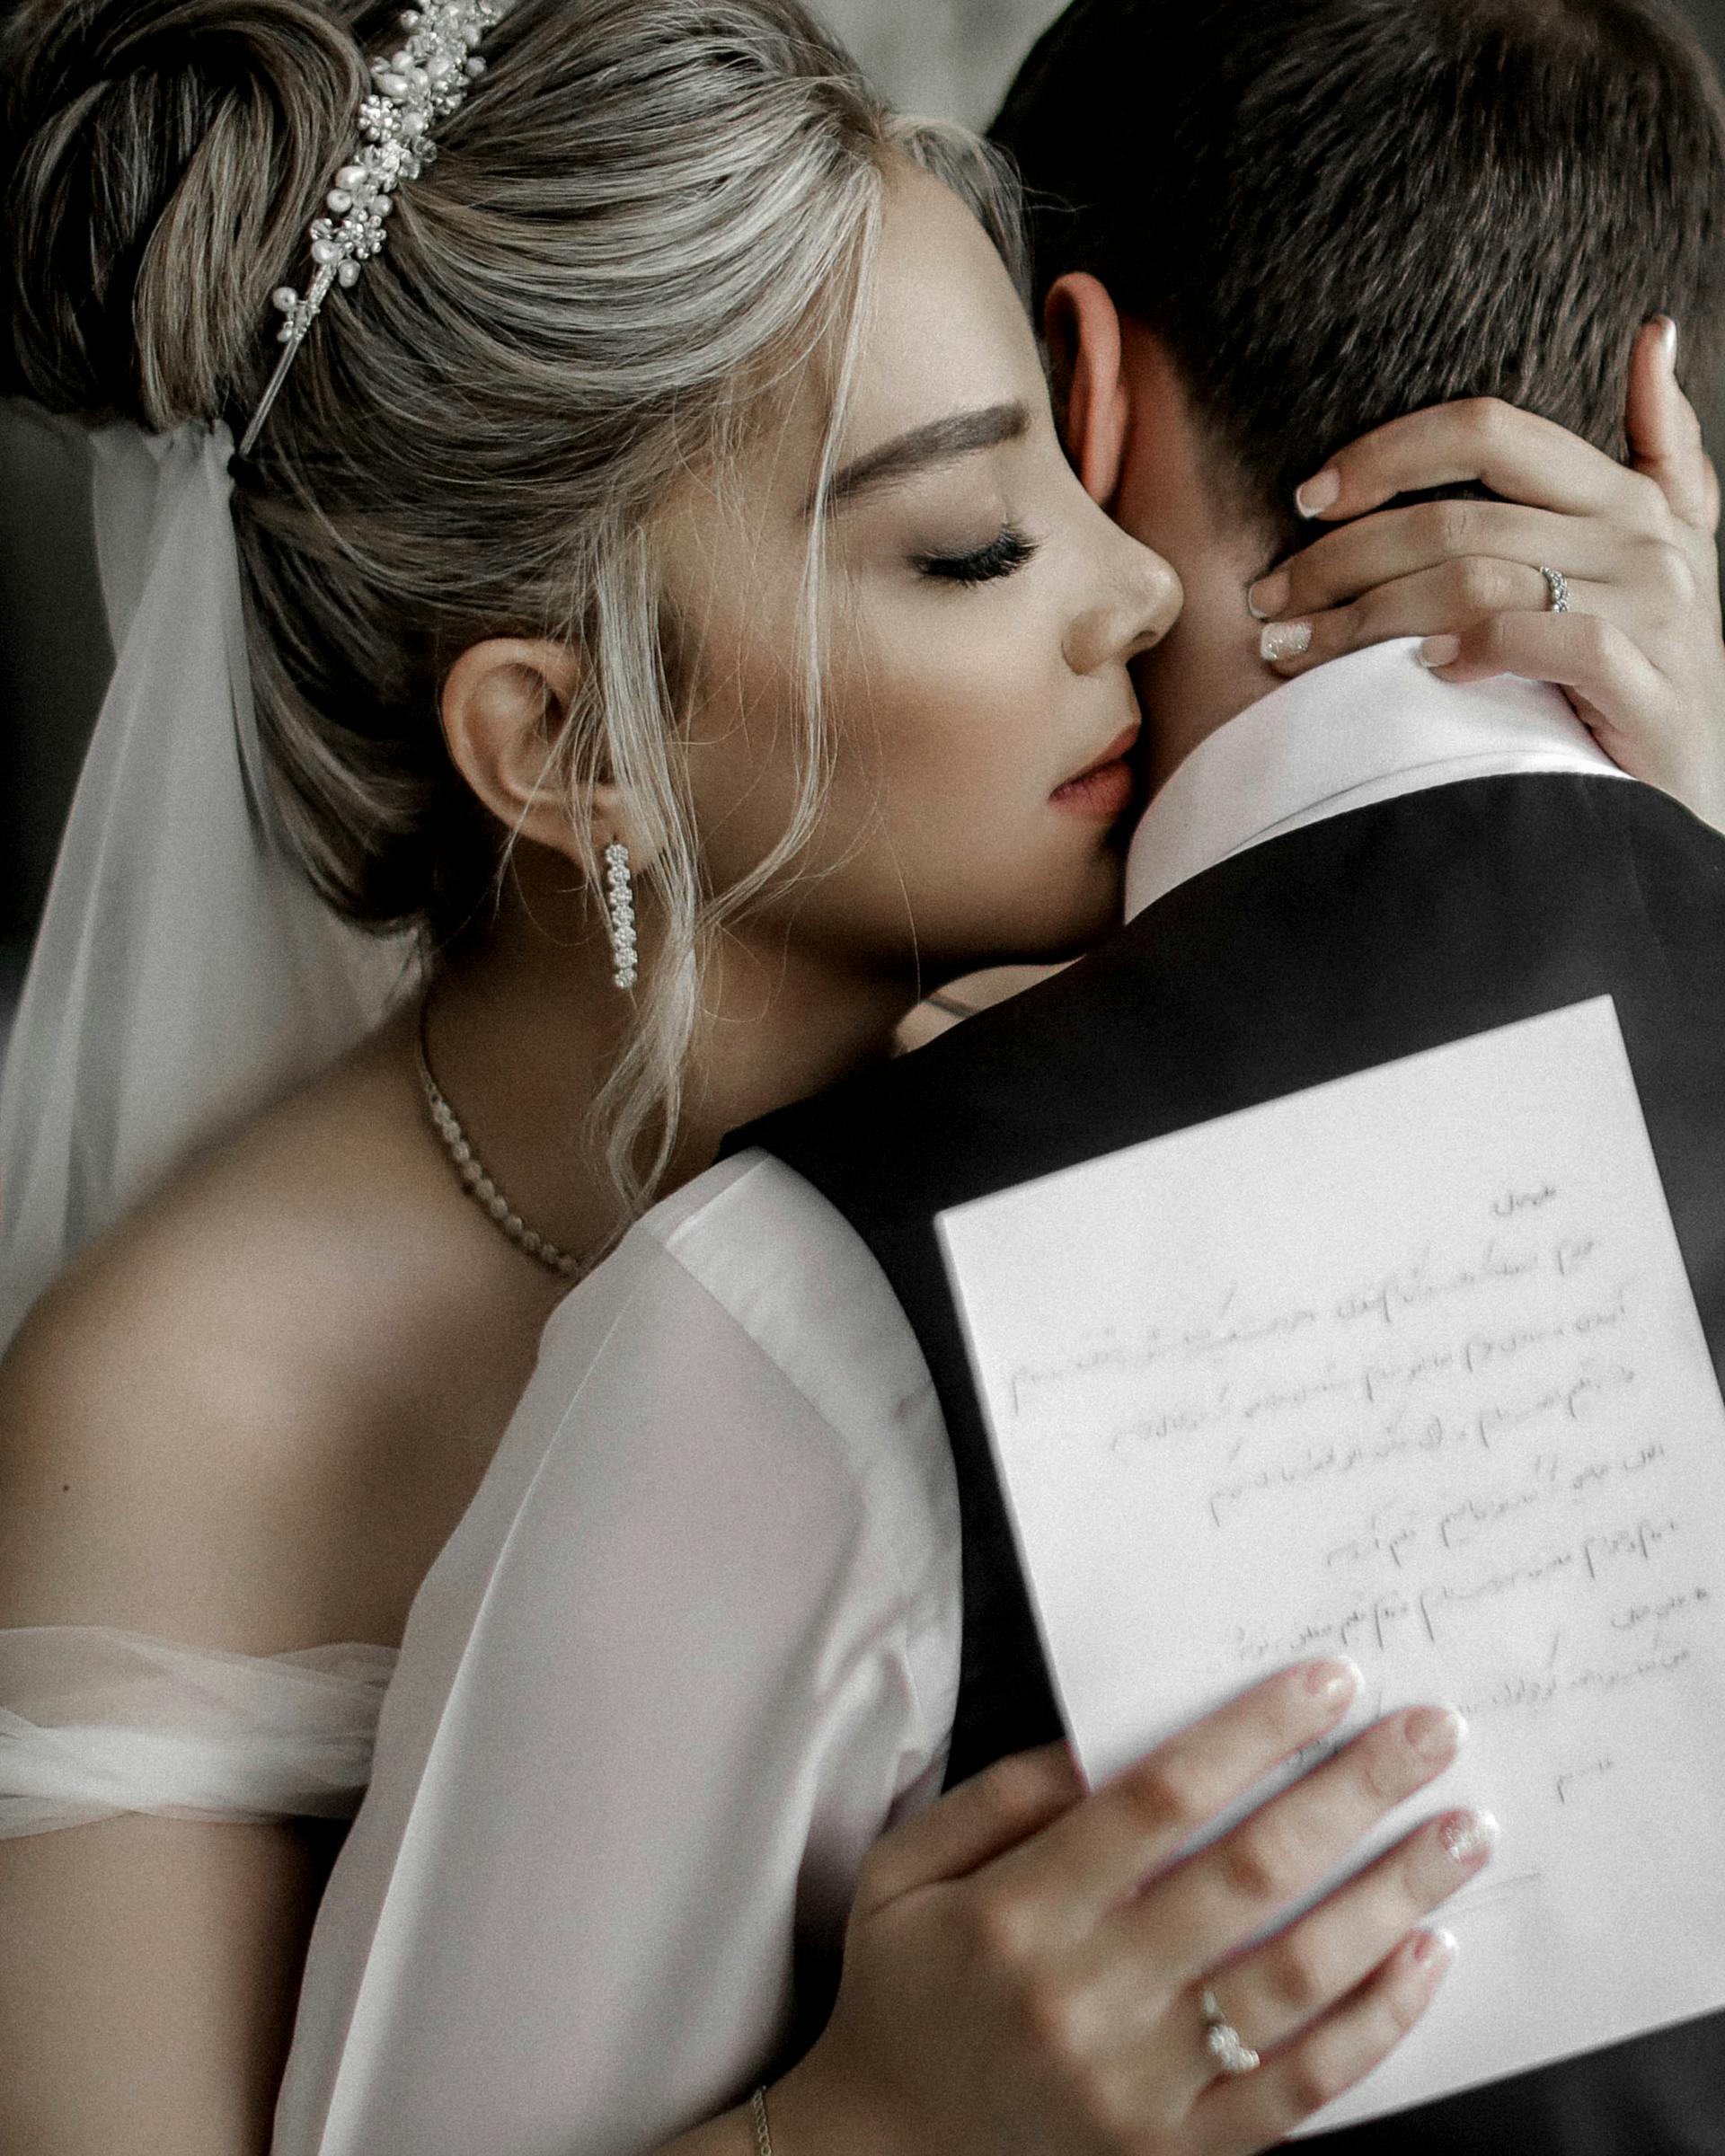 Eine Braut, die ihren Bräutigam umarmt, während sie ein Stück Papier hält | Quelle: Pexels